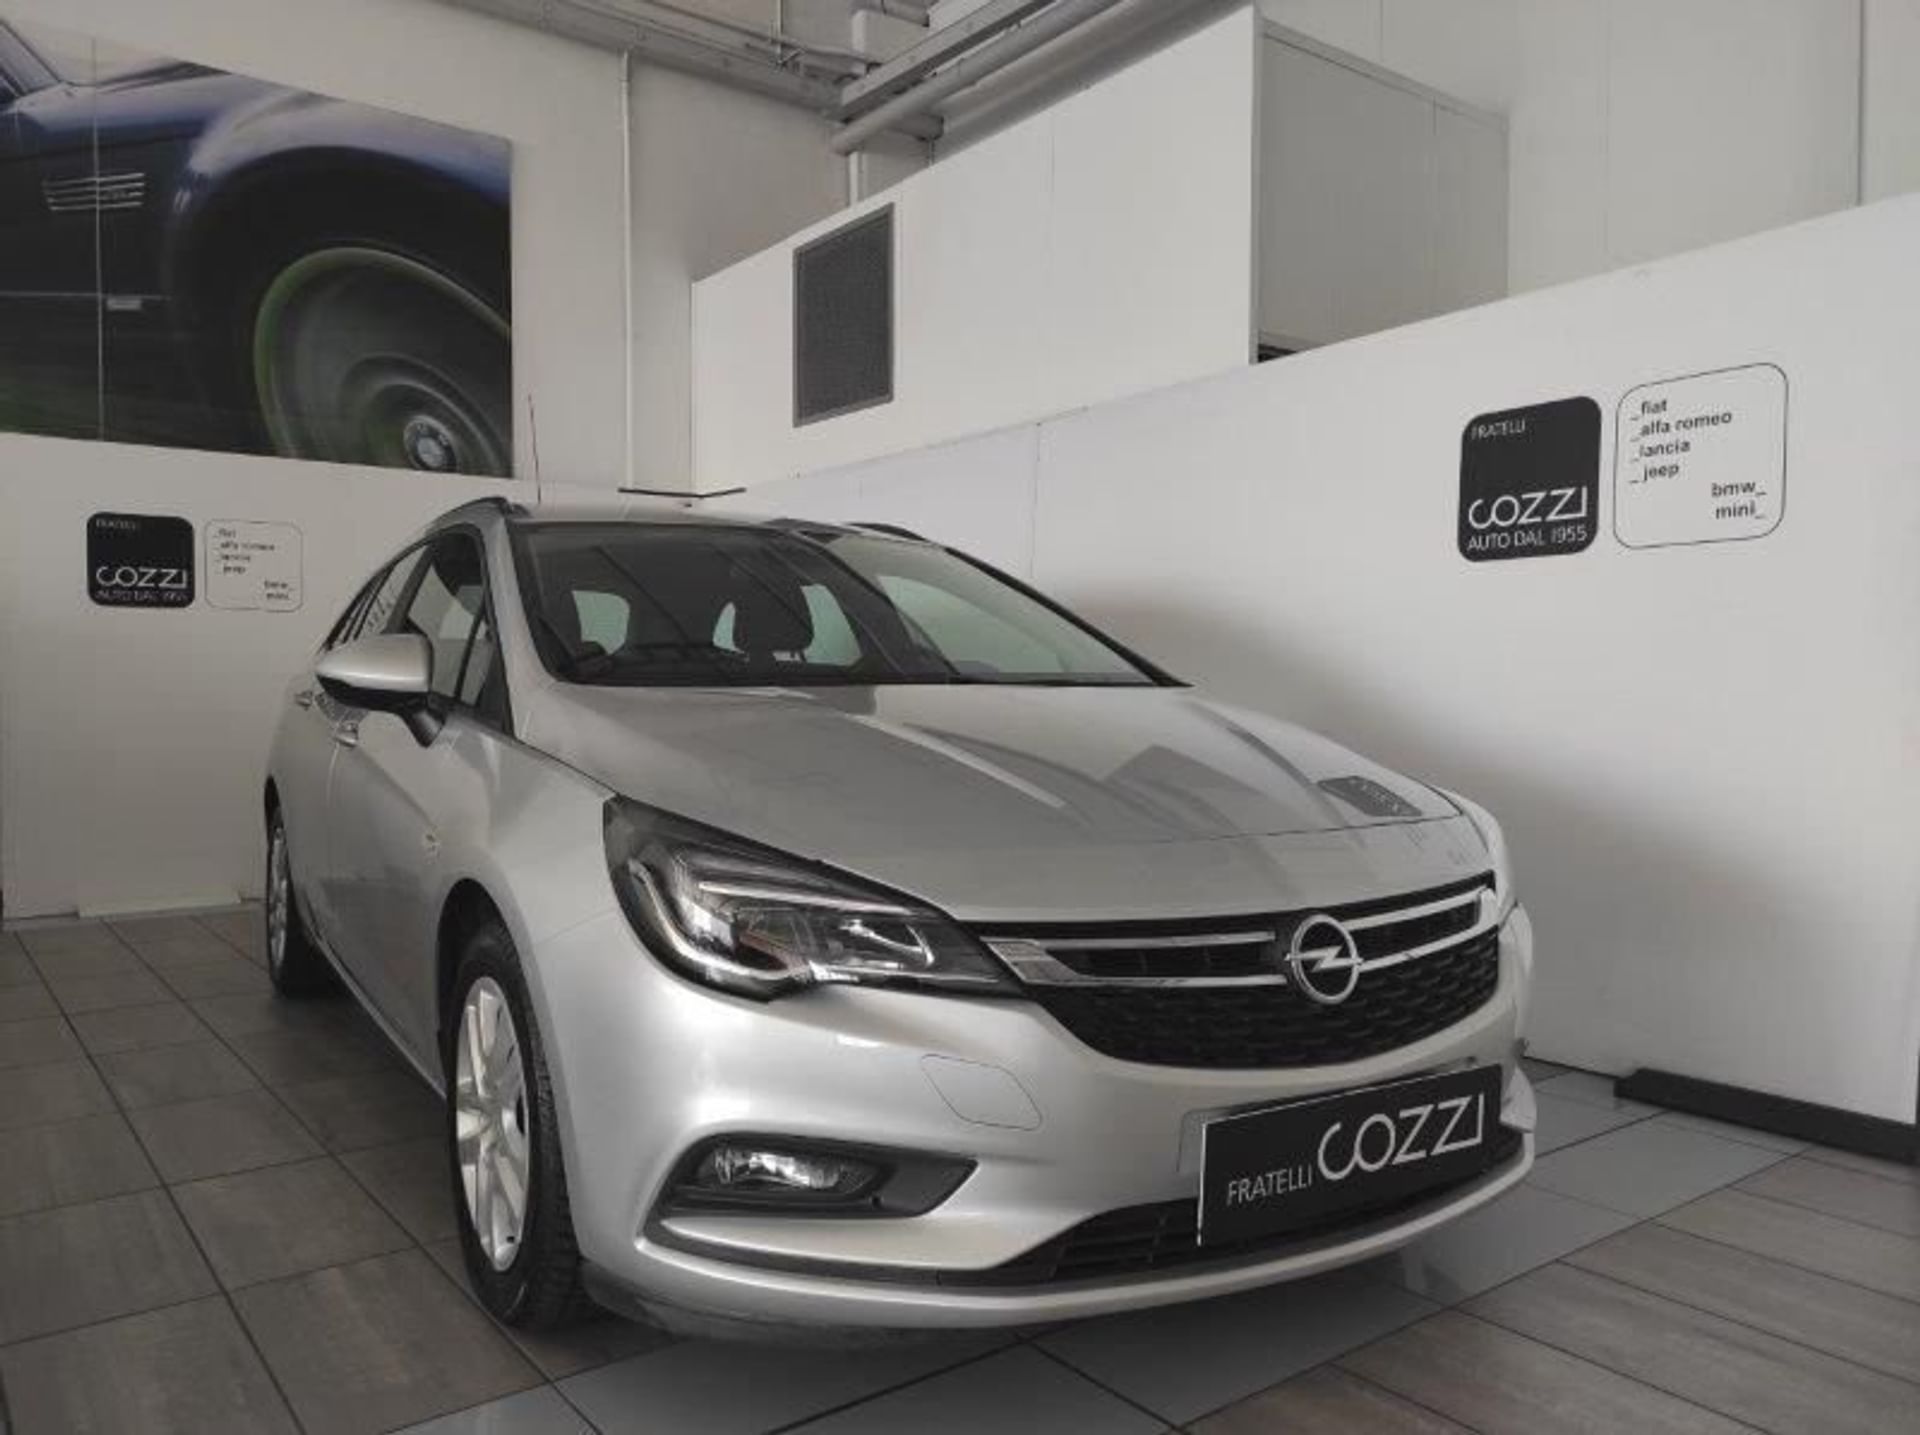 Opel Astra 1.6 CDTI 136CV